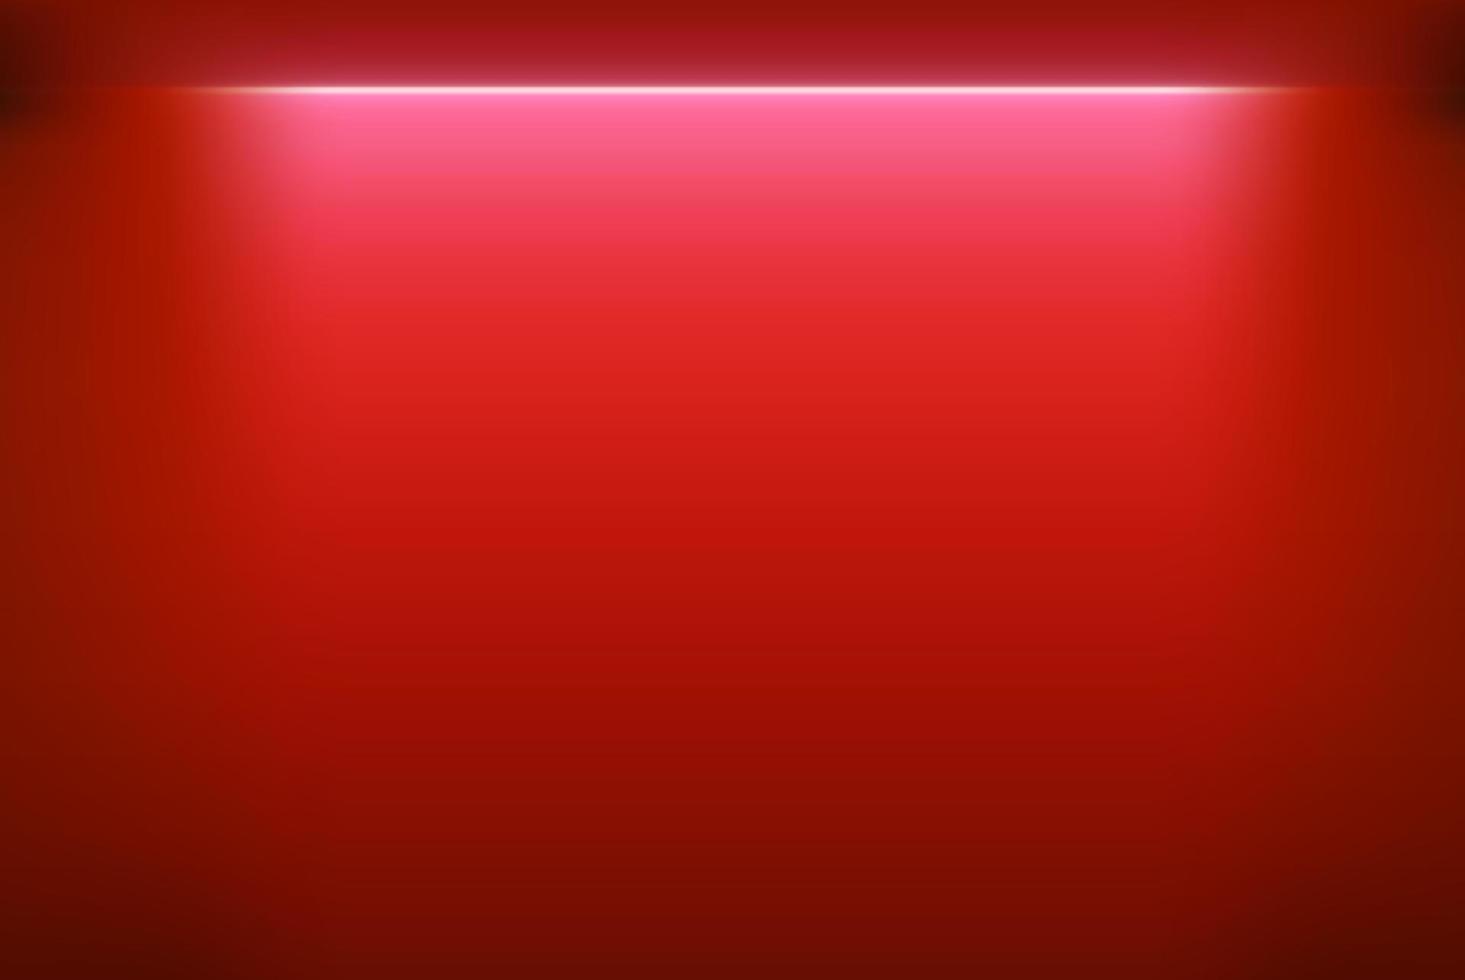 stanza vuota rossa con vivida luce al neon. illustrazione vettoriale realistica